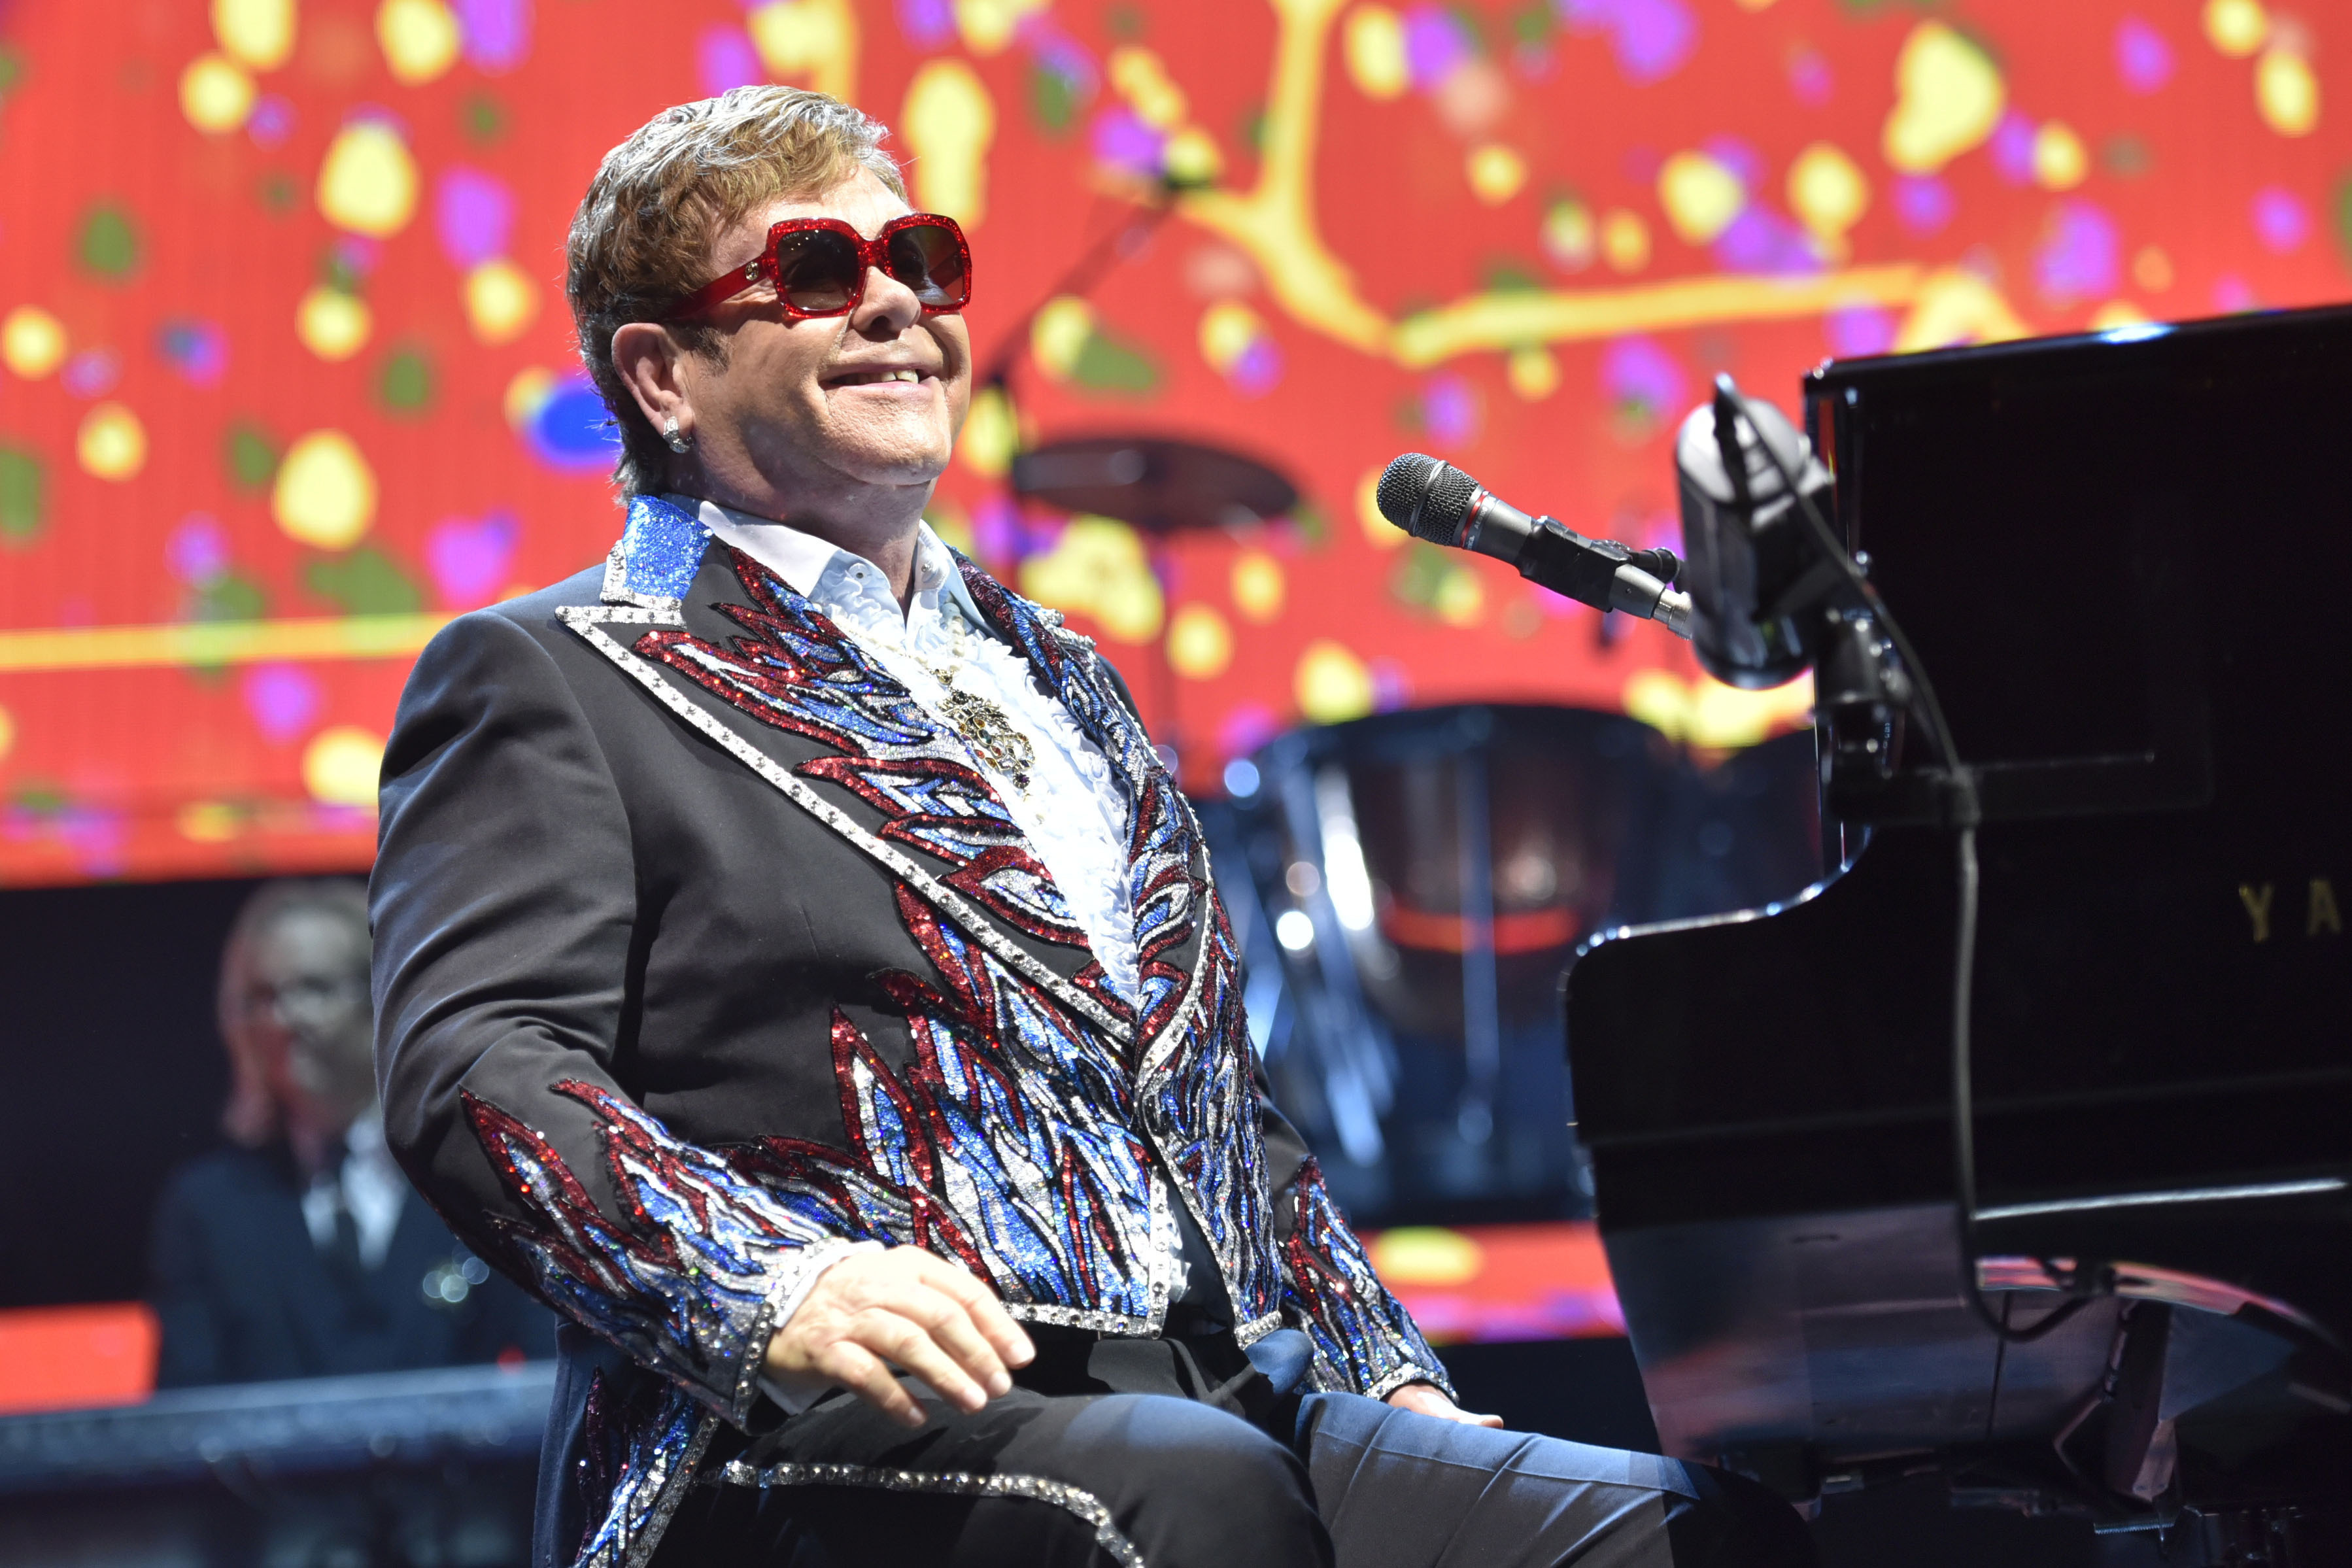 Elton John to bring farewell tour to Gillette Stadium in 2022 The